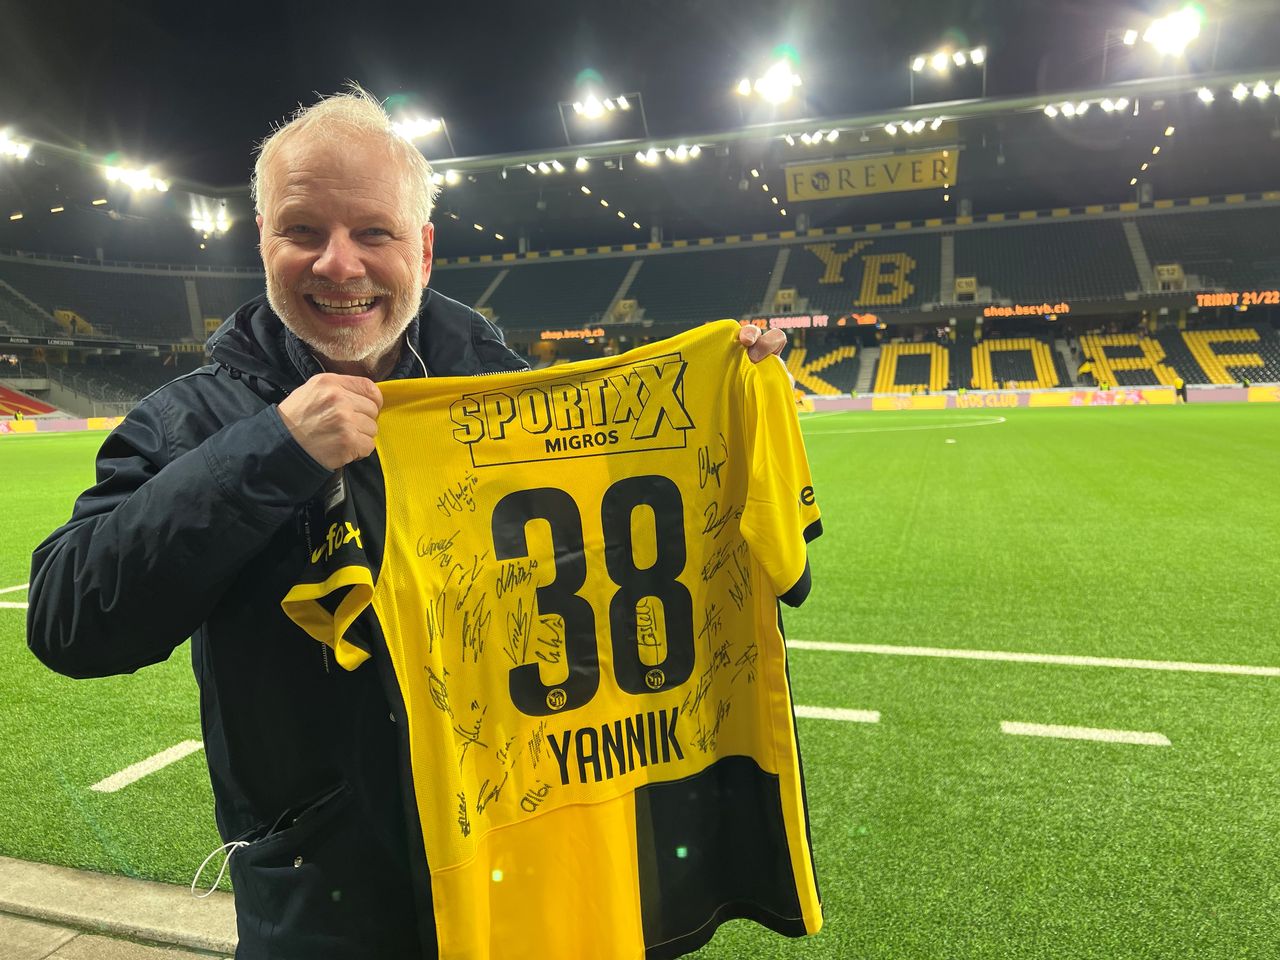 Yannick Barratt, que usa as cores da TSR-RTS há 38 anos, recebeu uma camisa autografada pelos jogadores e gerentes do Young Boys no sábado. [Miguel Bao]